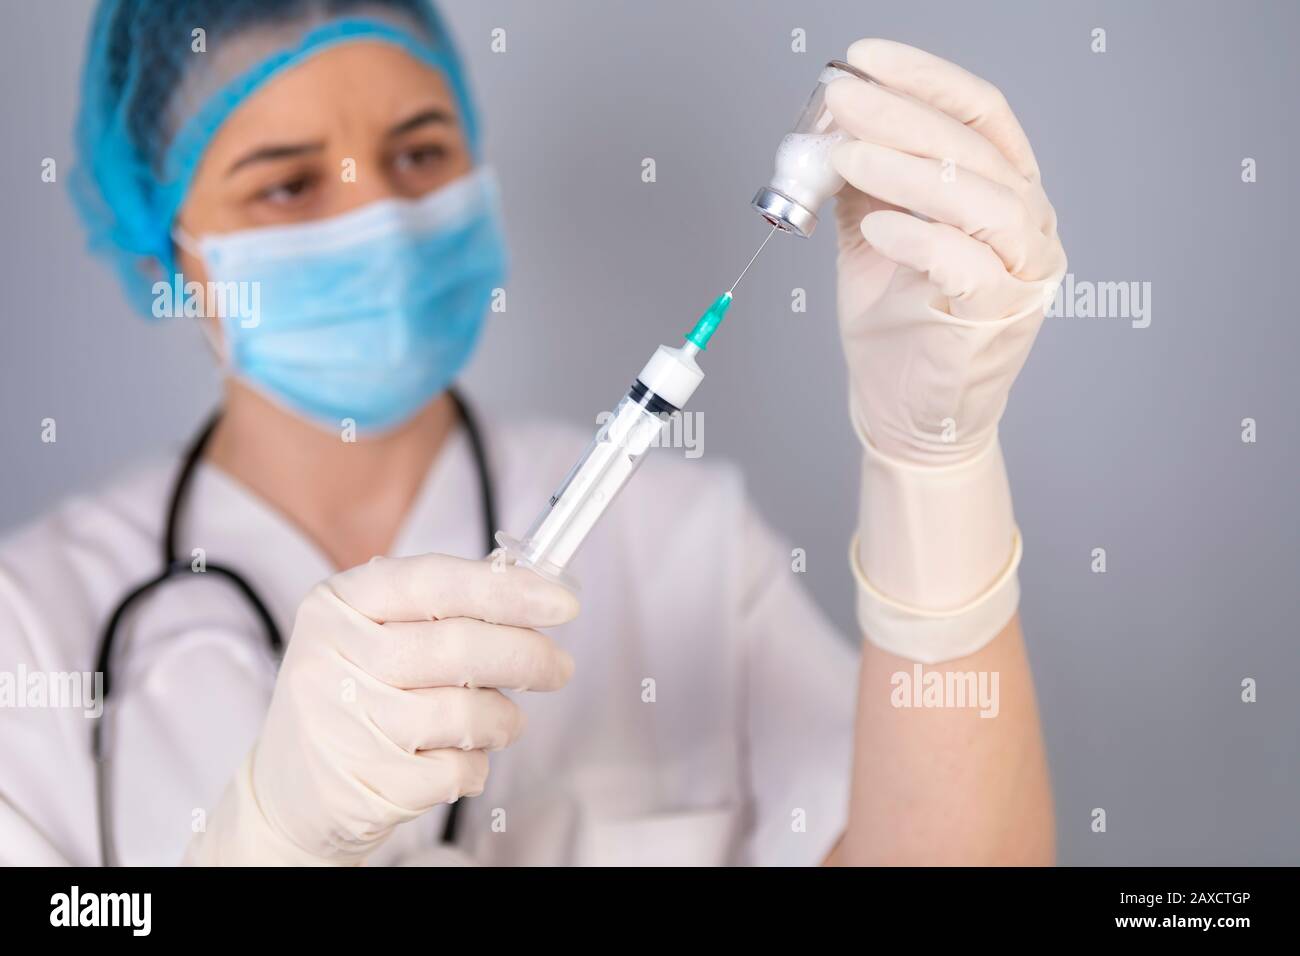 Mains du médecin remplissant la seringue de vaccin. Concept de traitement médical. La seringue est mise au point. Banque D'Images